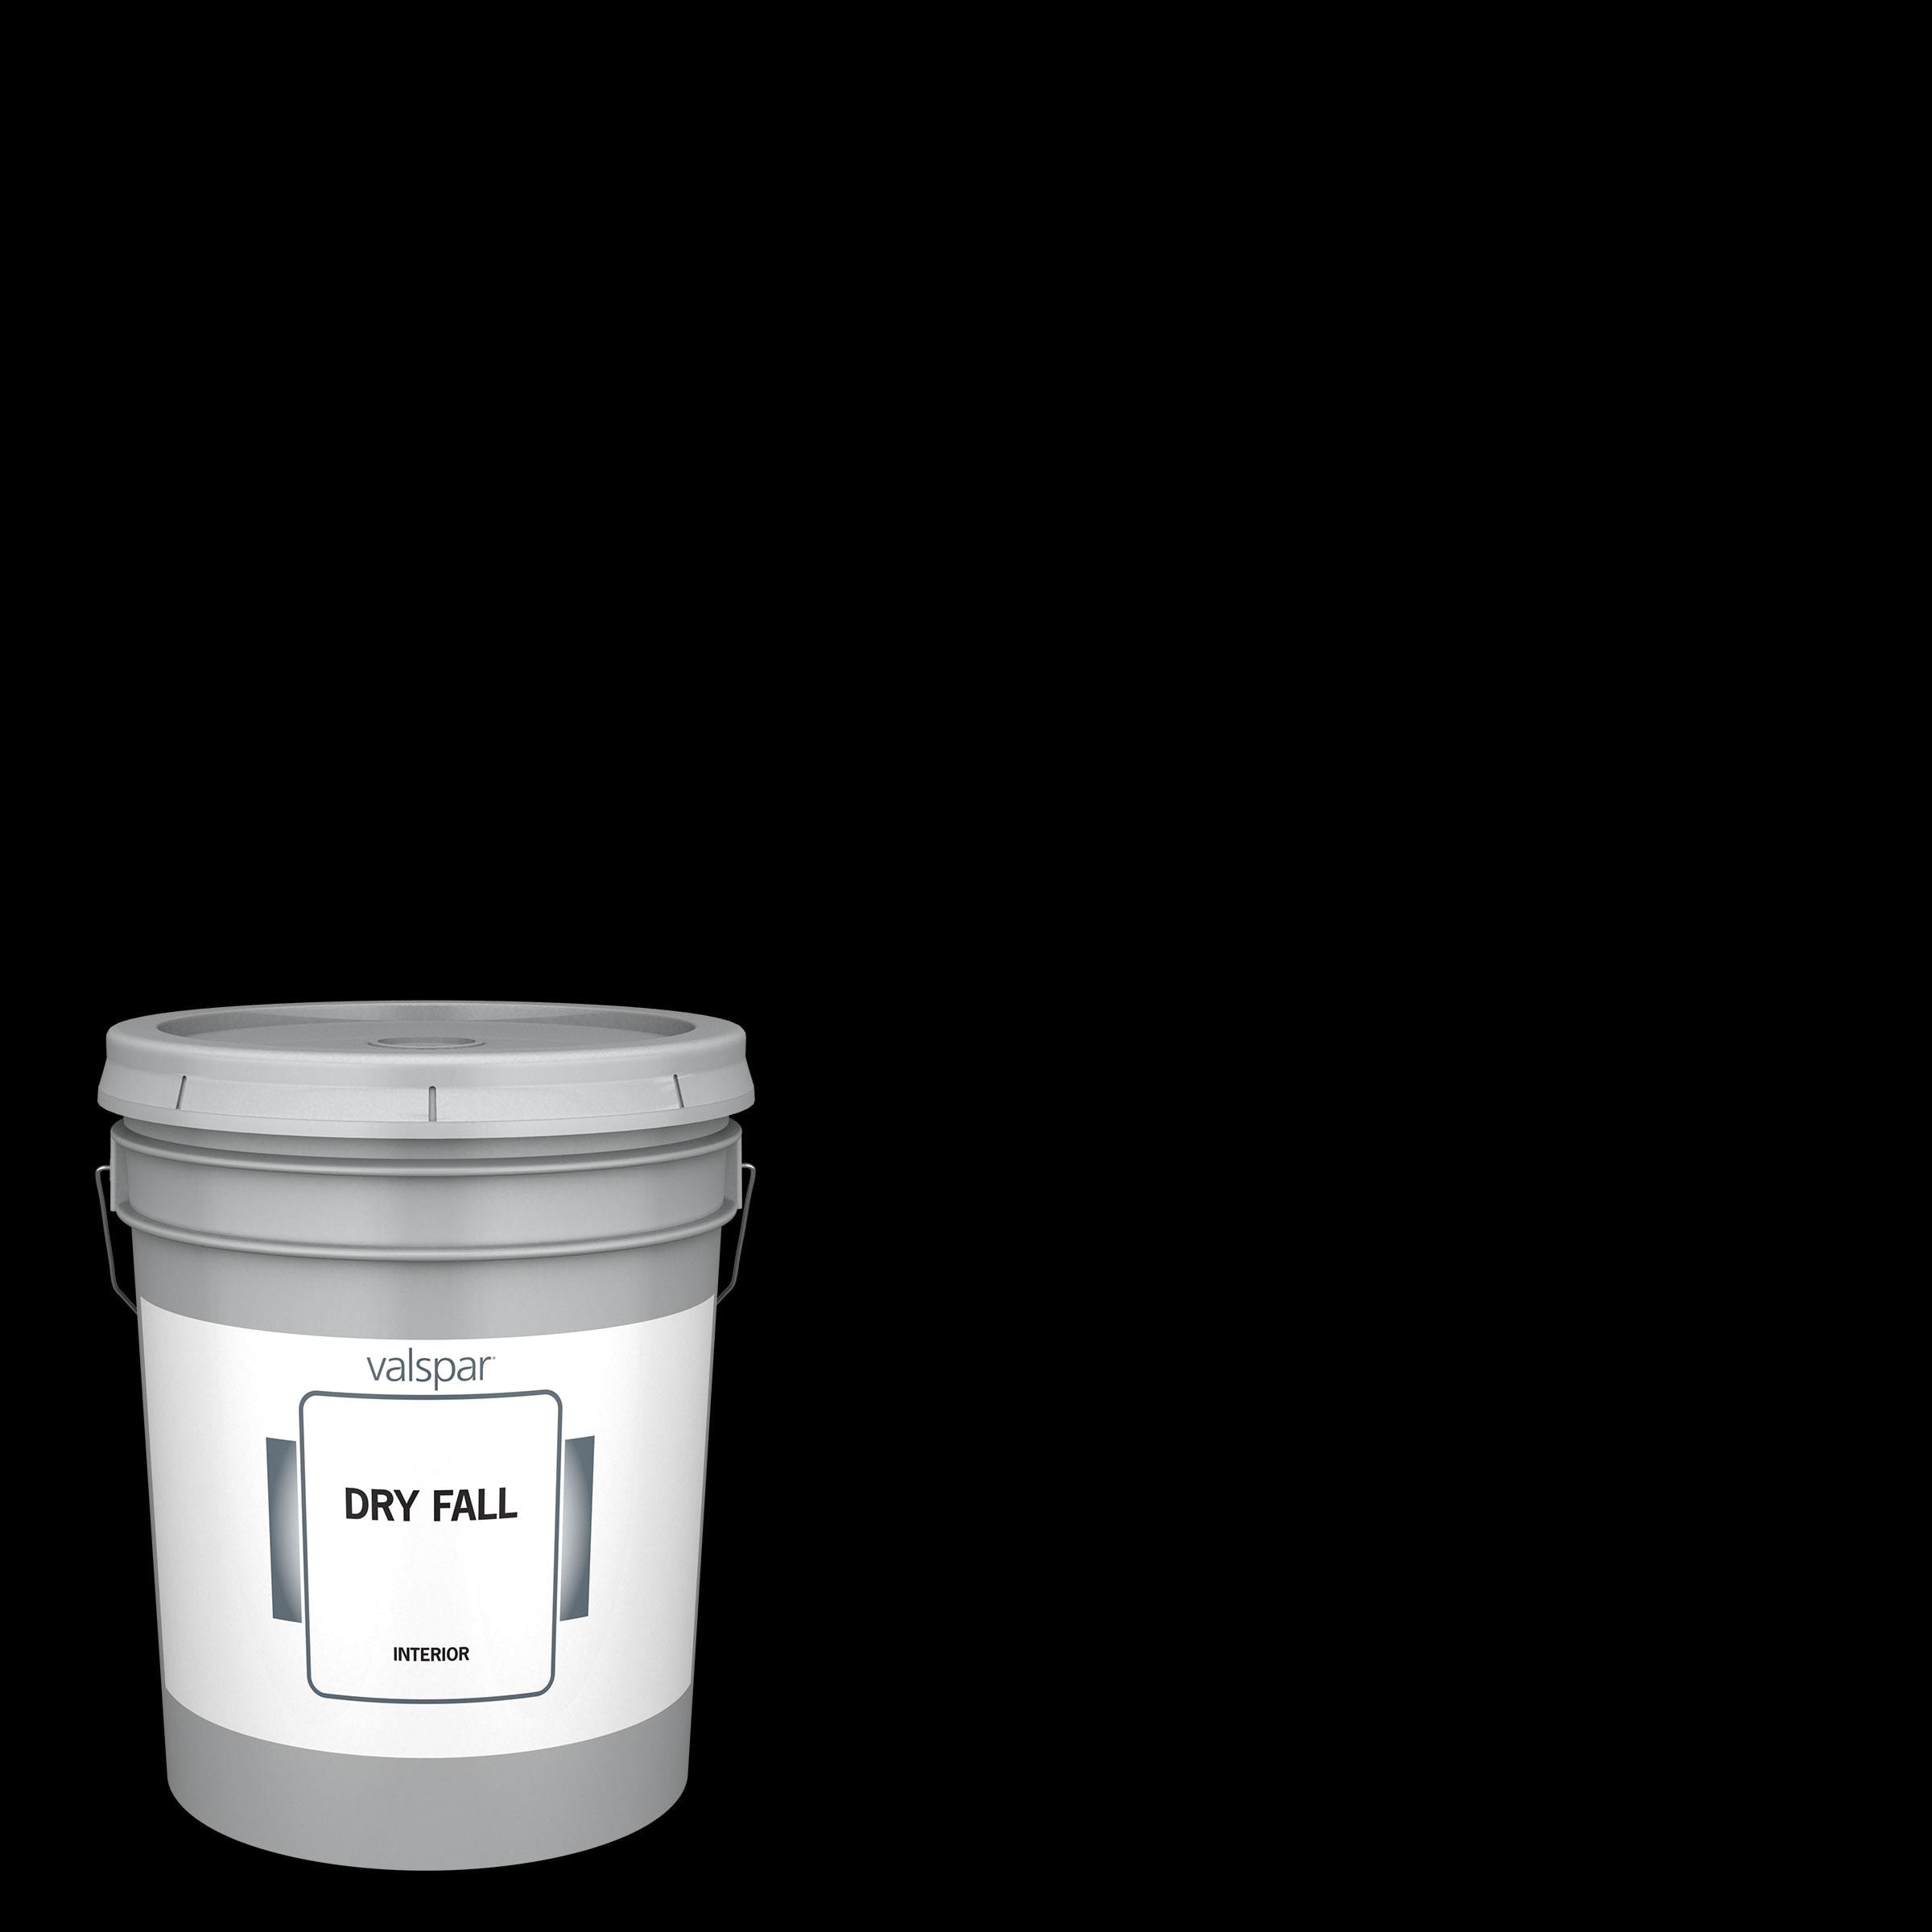 Het Latex Universal white latex paint 5 kg - VMD parfumerie - drogerie